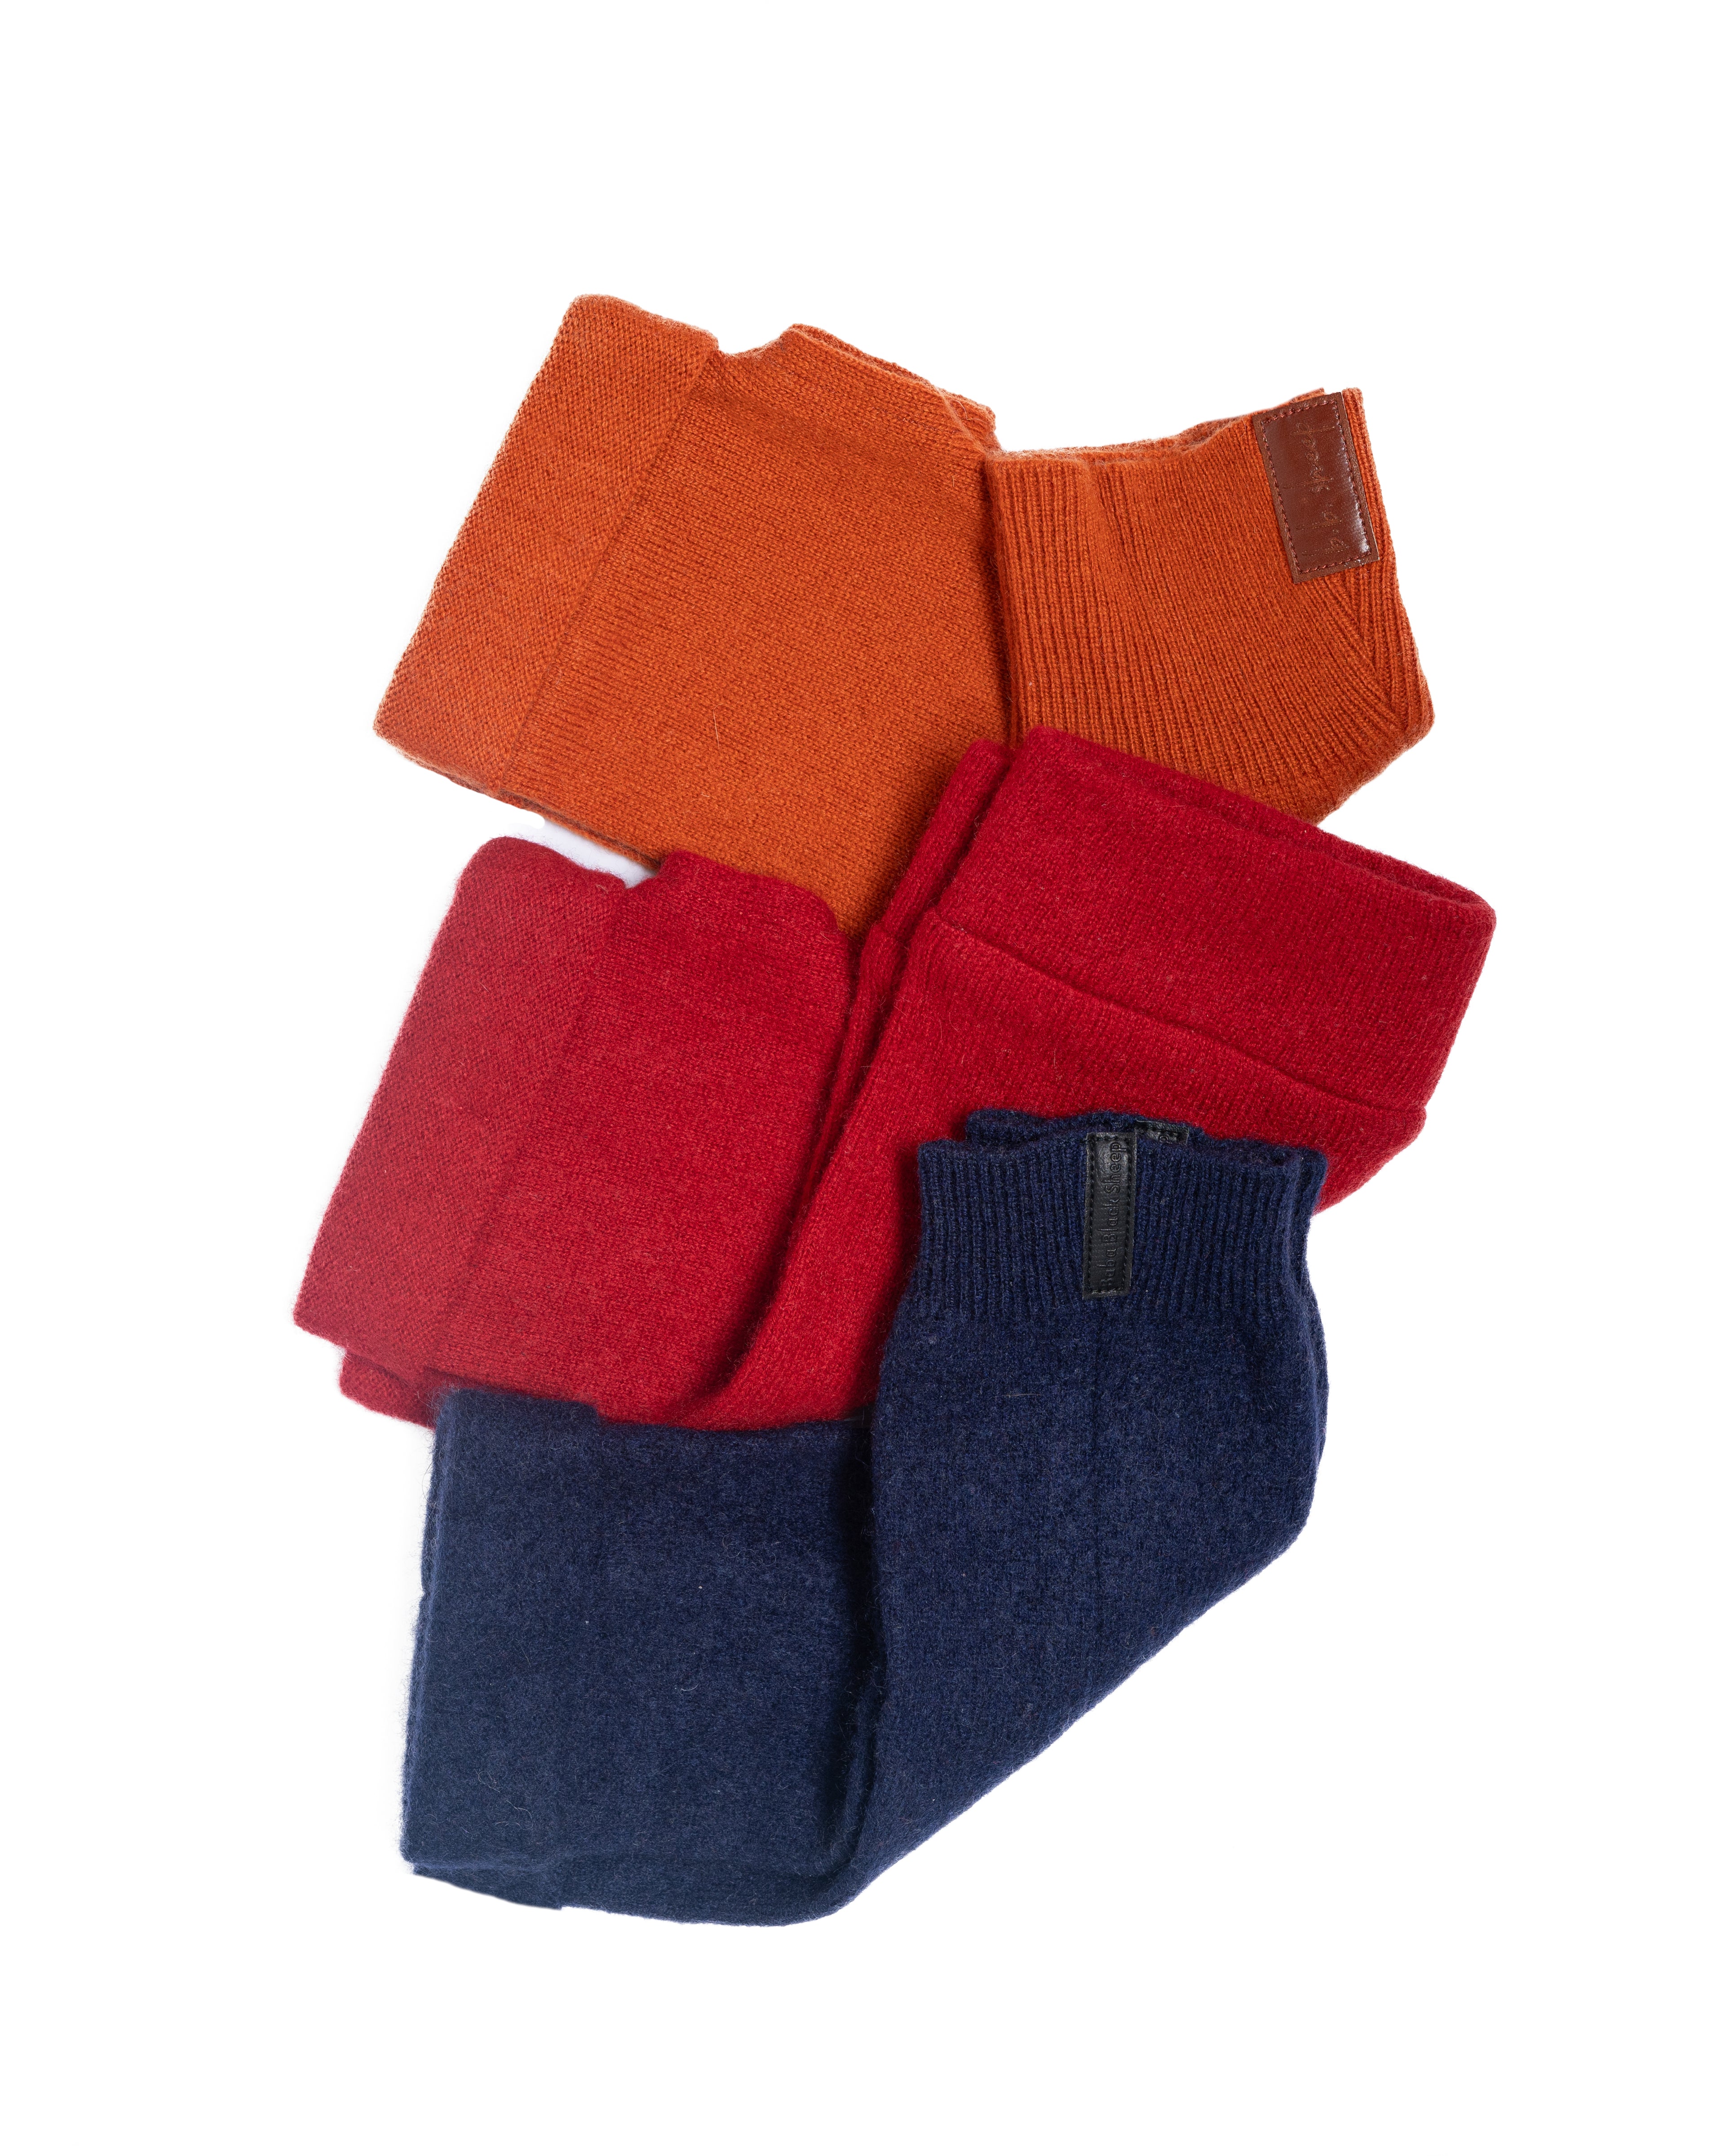 Fireside Trio Fingerless Gloves Set - Orange, Red, Navy Blue, Box of 3